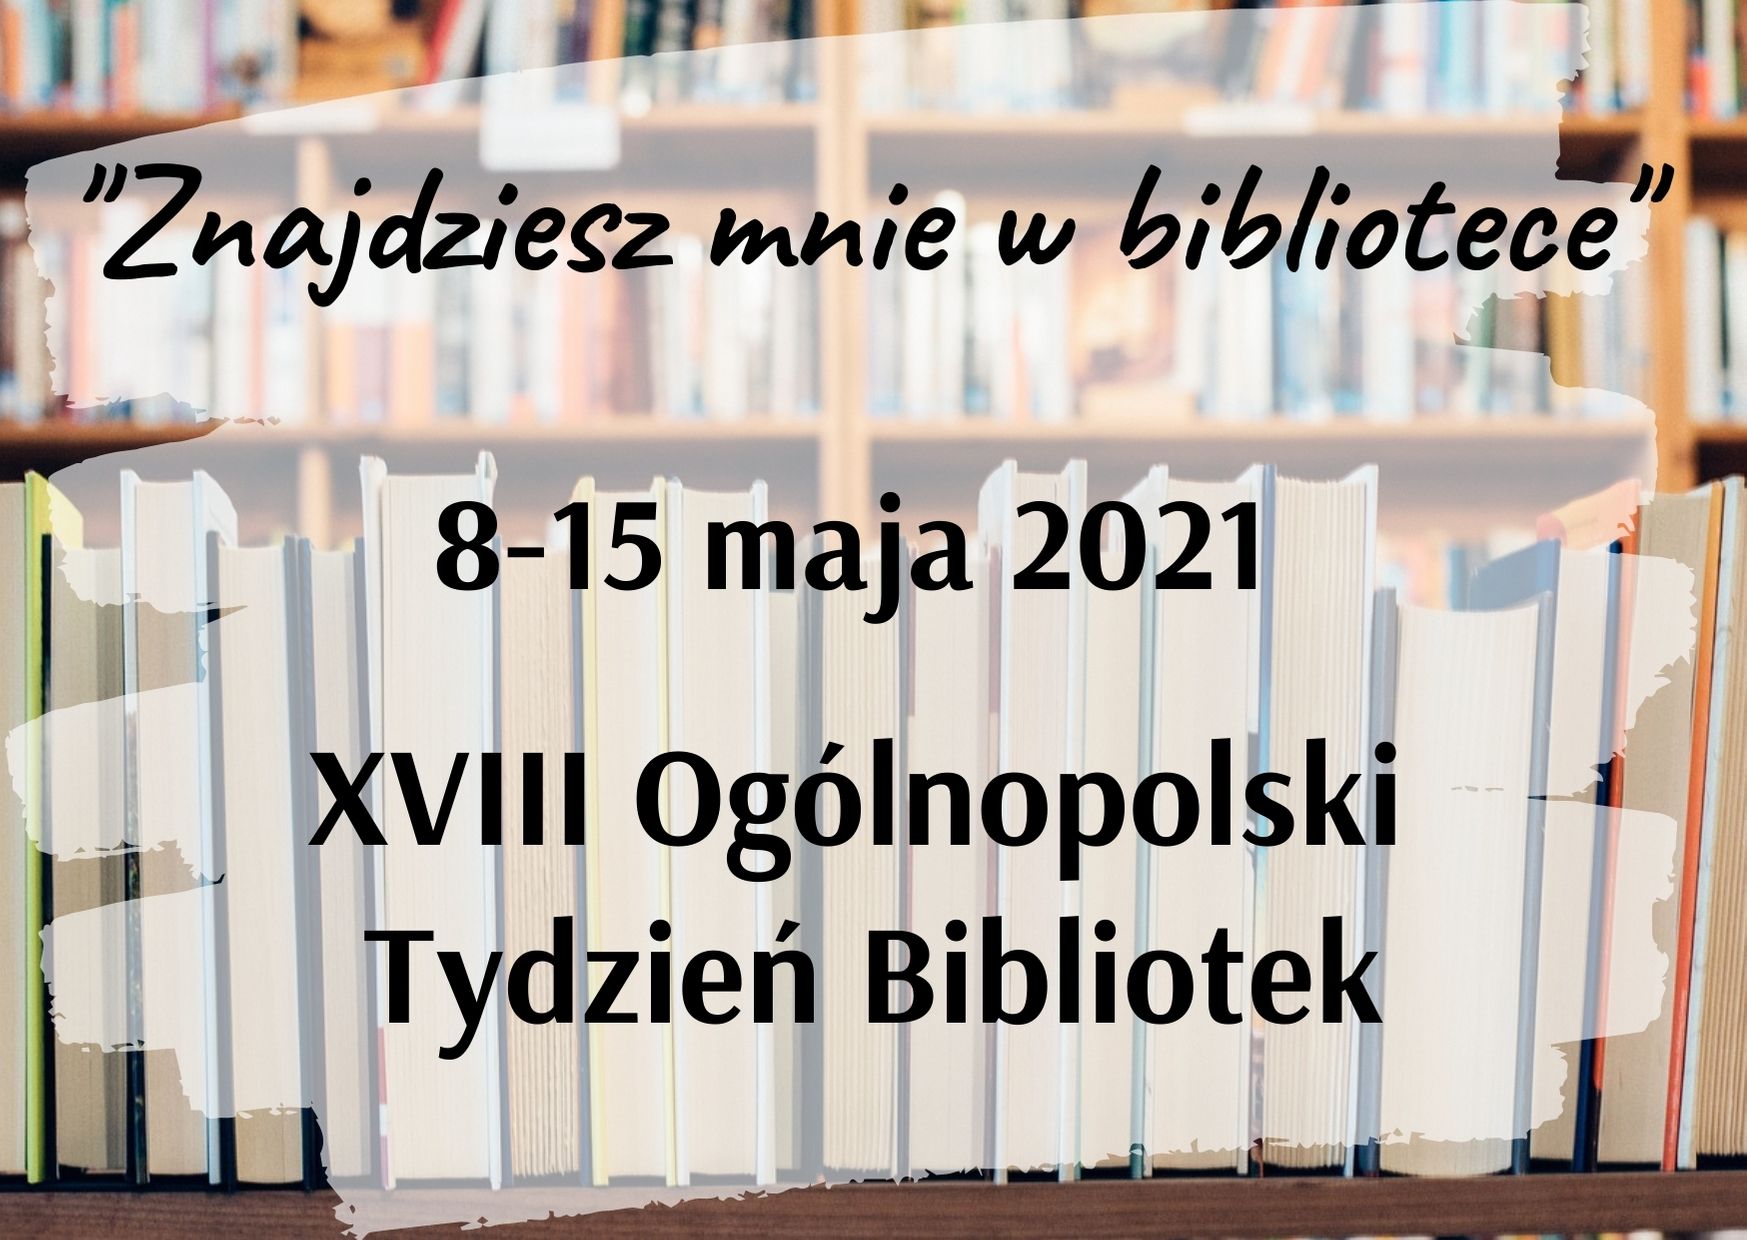 "Znajdziesz mnie w bibliotece". XVIII Ogólnopolski Tydzień Bibliotek. 8-15 maja 2021.